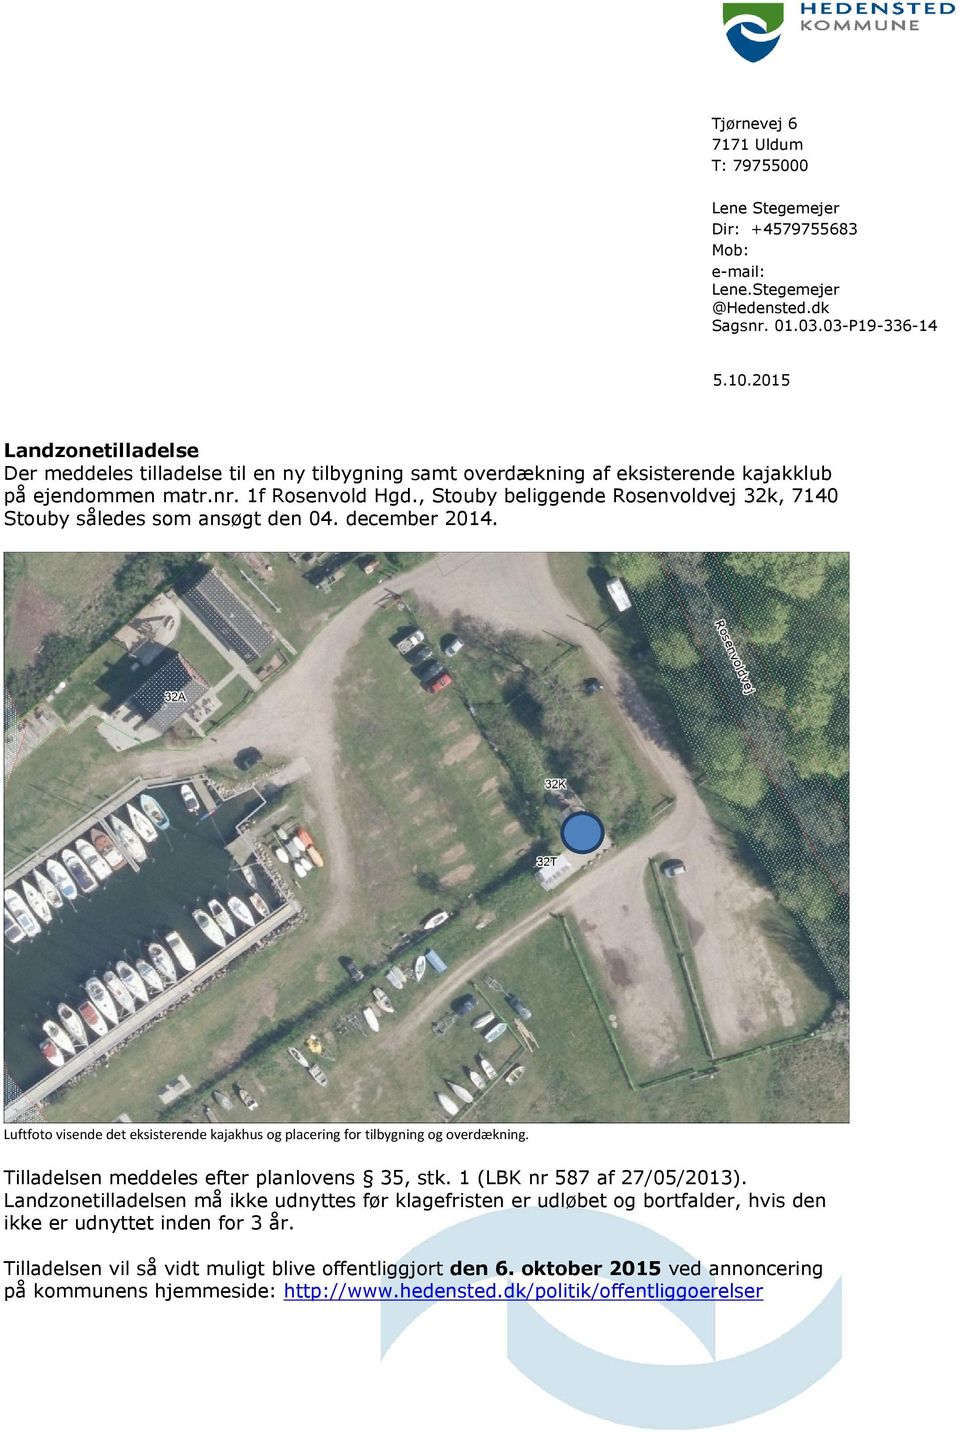 , Stouby beliggende Rosenvoldvej 32k, 7140 Stouby således som ansøgt den 04. december 2014. Luftfoto visende det eksisterende kajakhus og placering for tilbygning og overdækning.